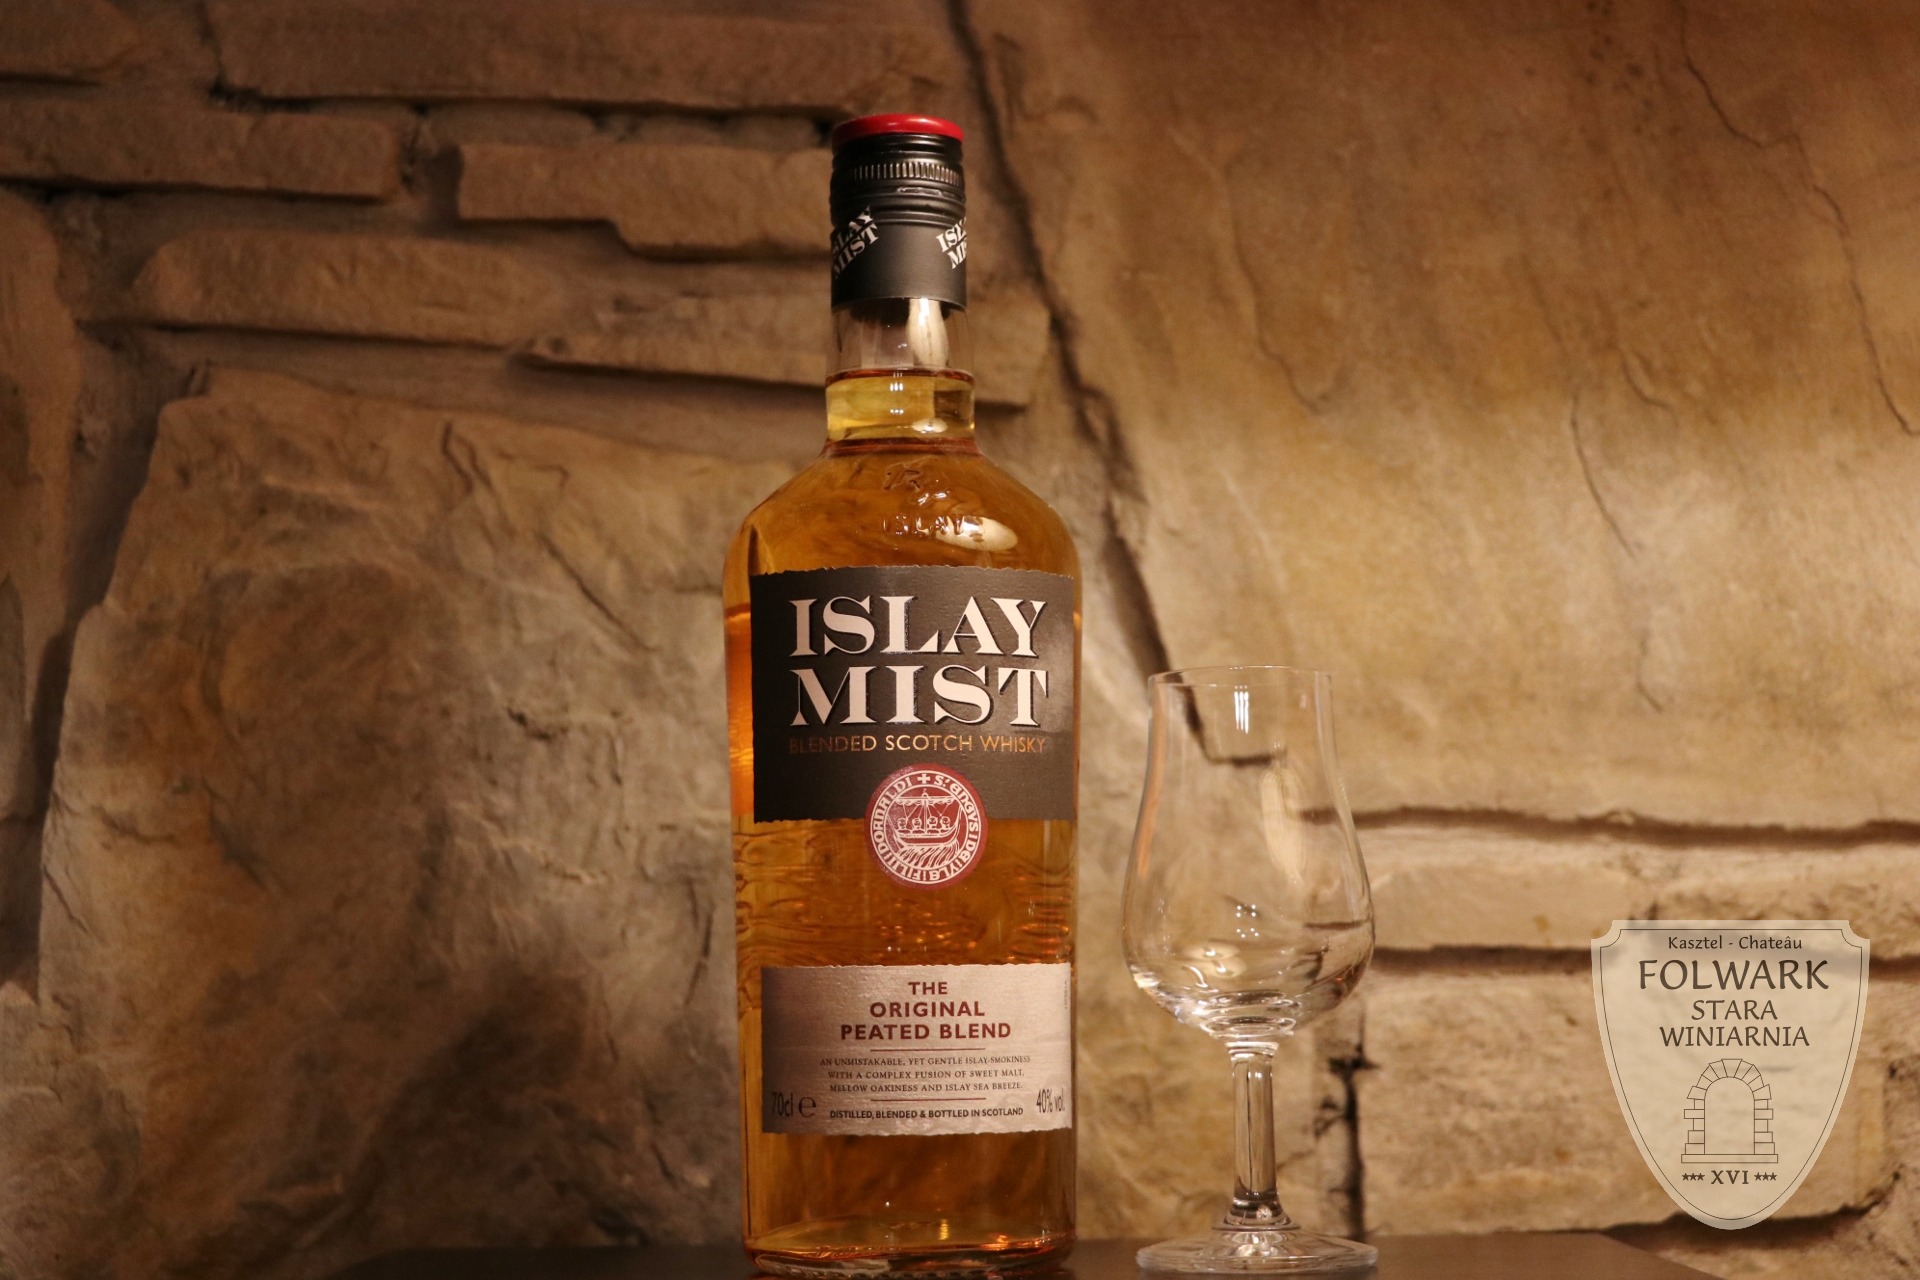 Islay Mist whisky Folwark Stara Winiarnia Mszana Dolna